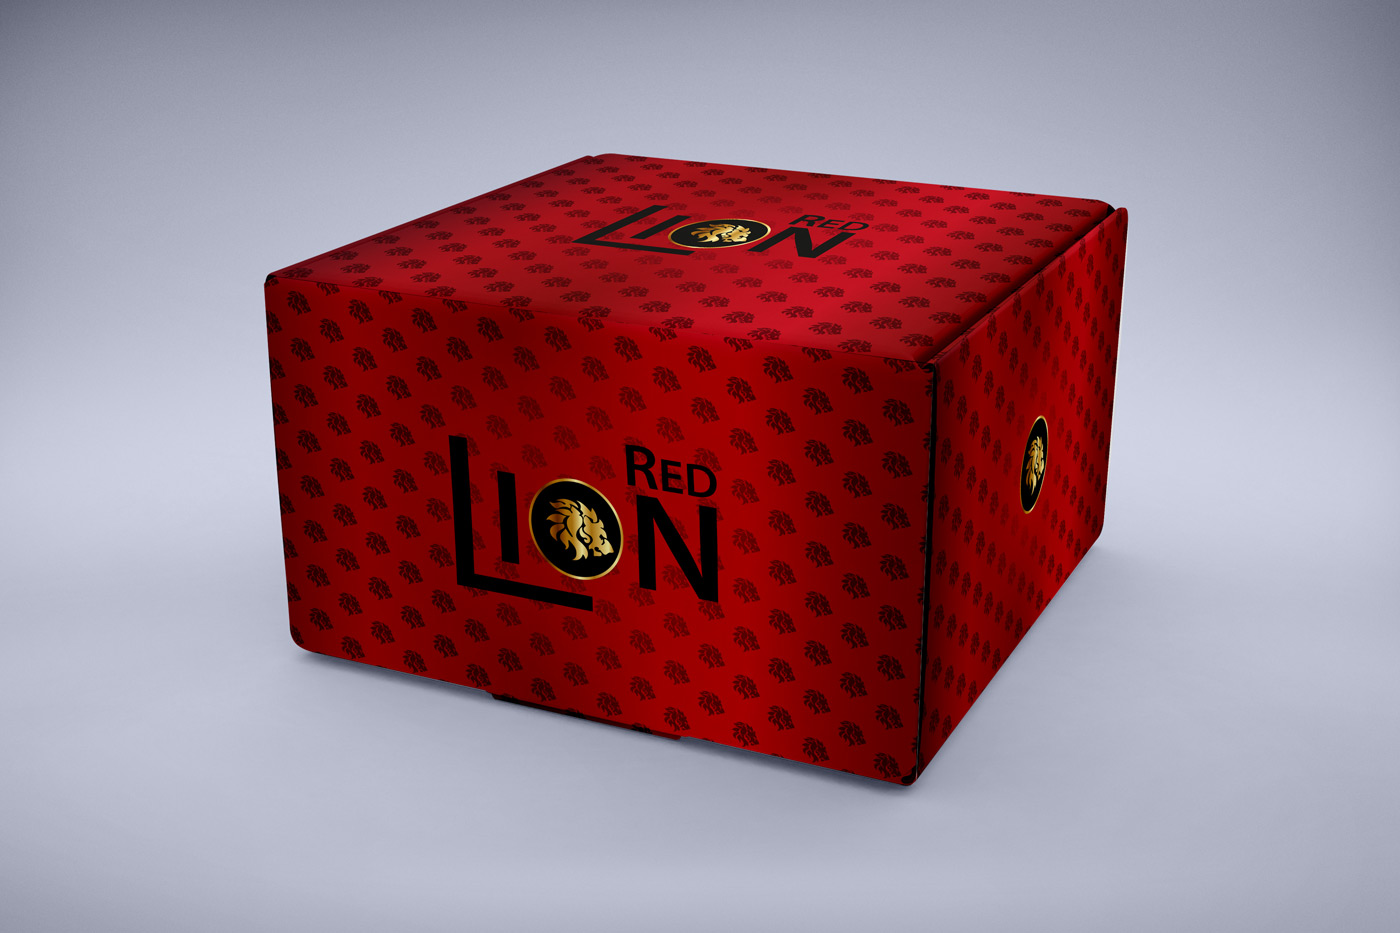 Diseño gráfico y creativo de etiquetas y packaging de vino para exportación RED LION